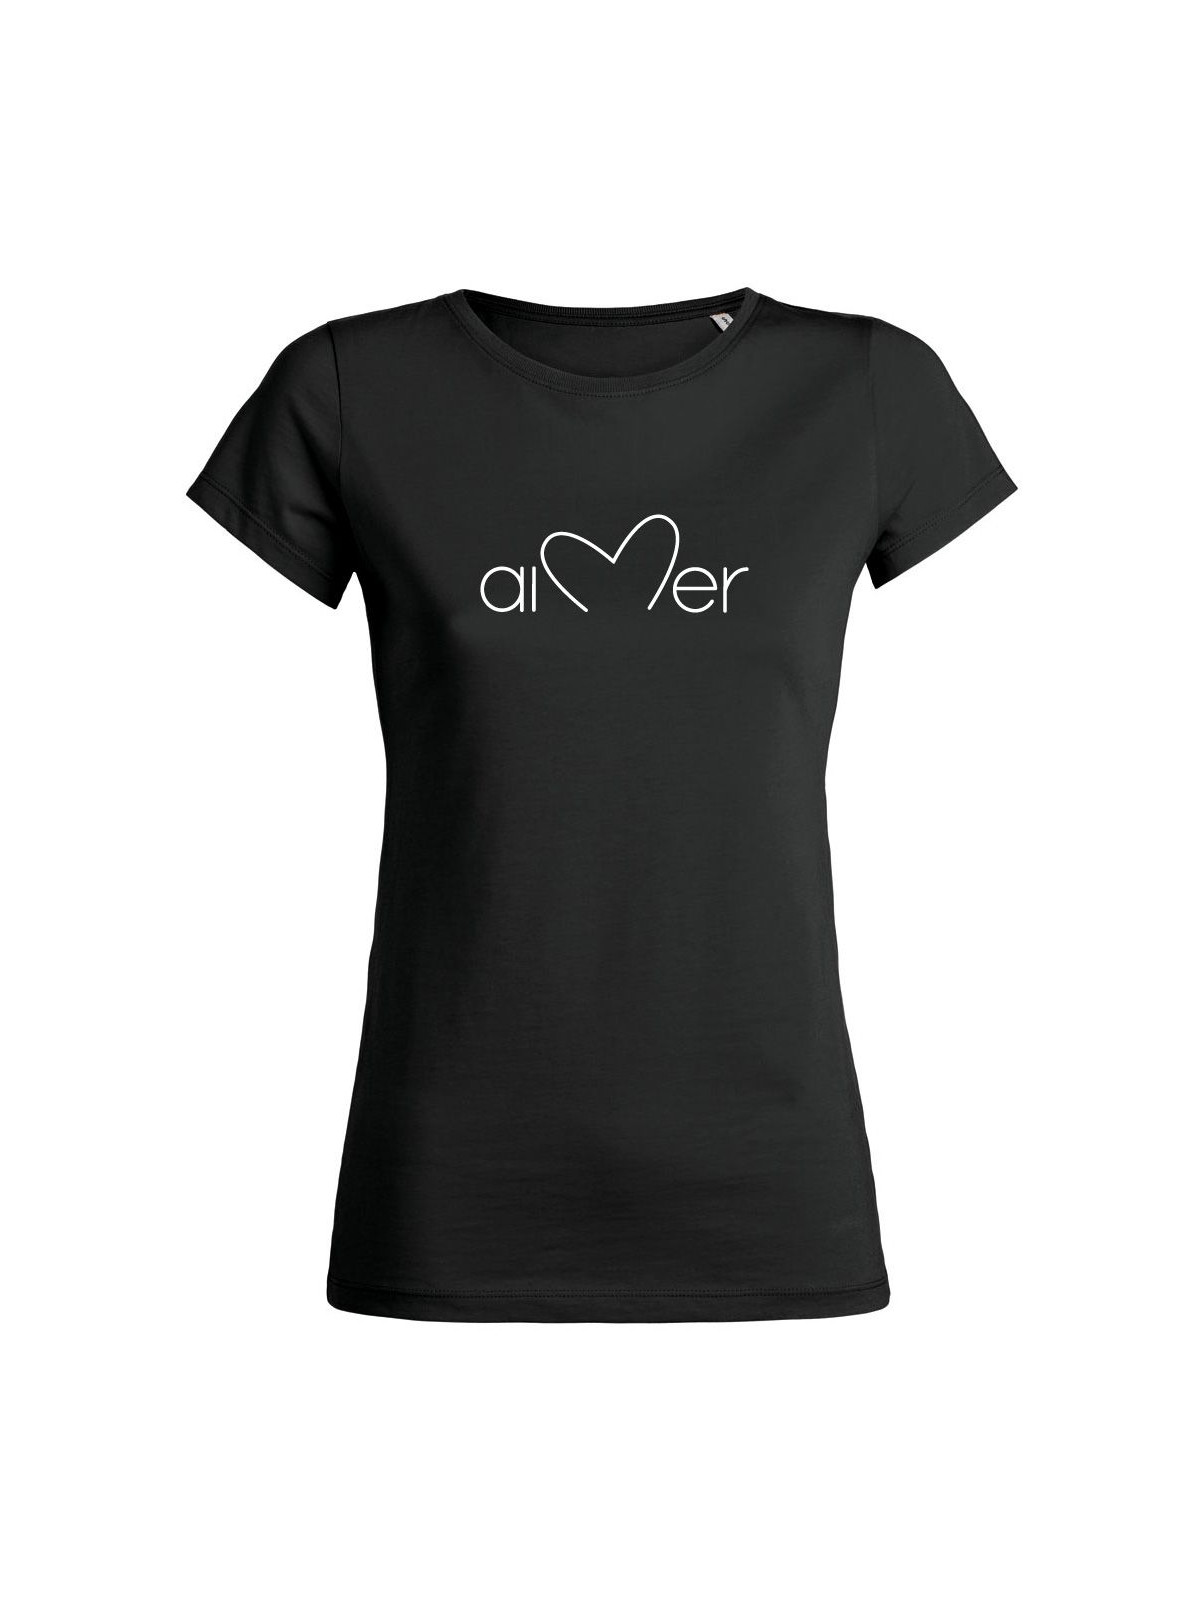 T-shirt femme "Aimer"